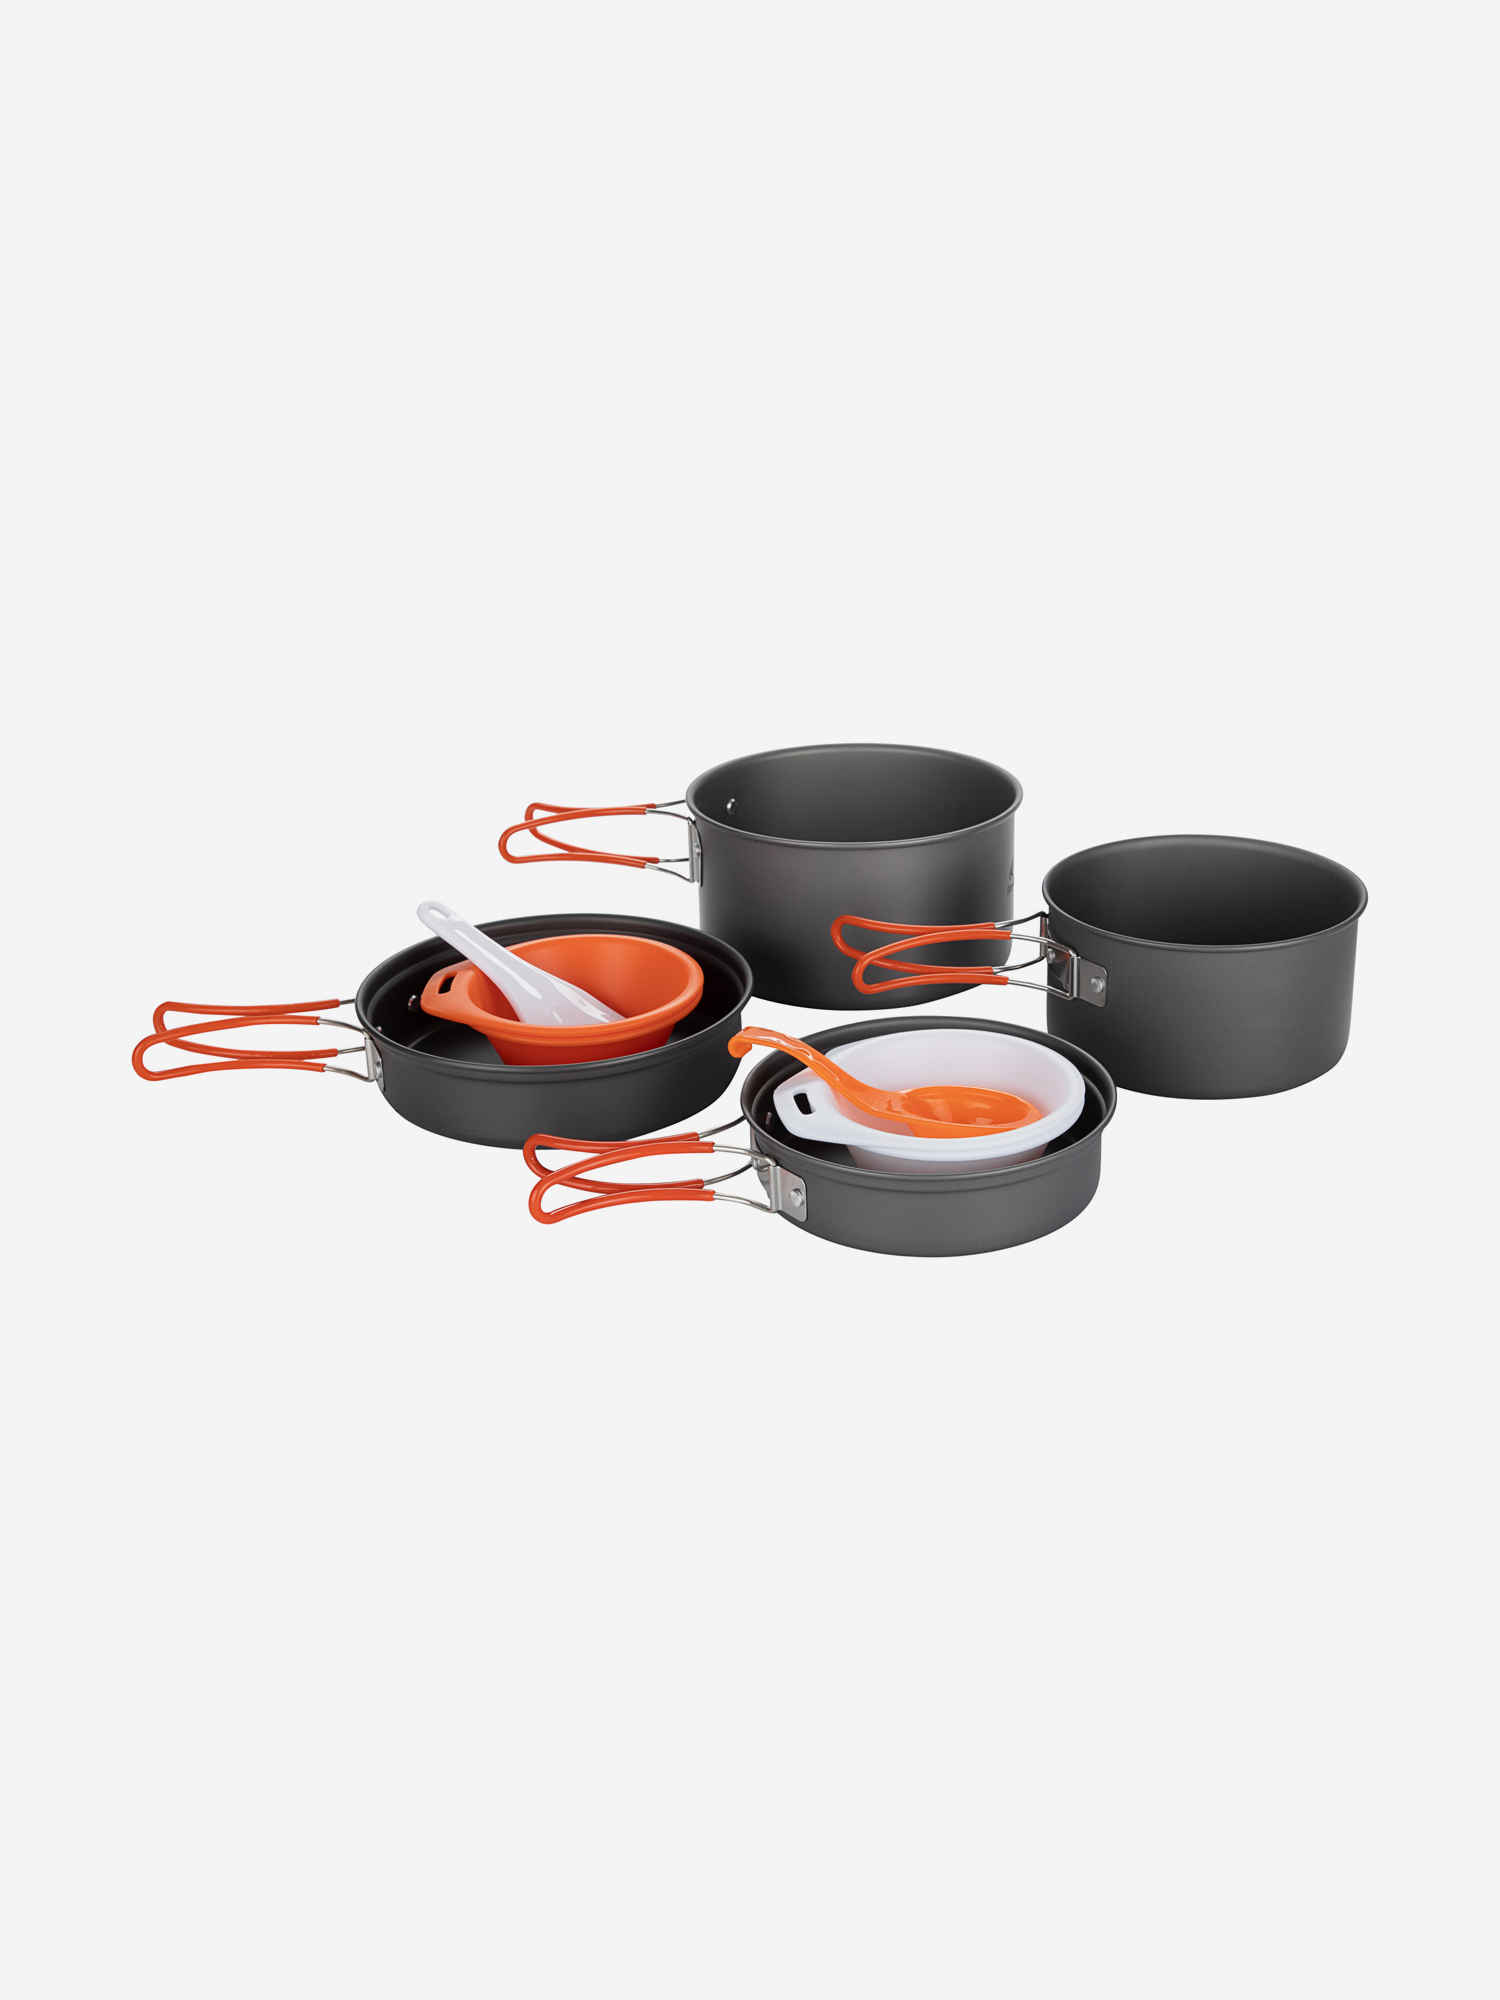 Набор посуды: 2 котелка, 2 сковороды Fire-Maple FMC-K7, Серый набор пожарных машинок playsmart fire control 4 шт подвижные детали